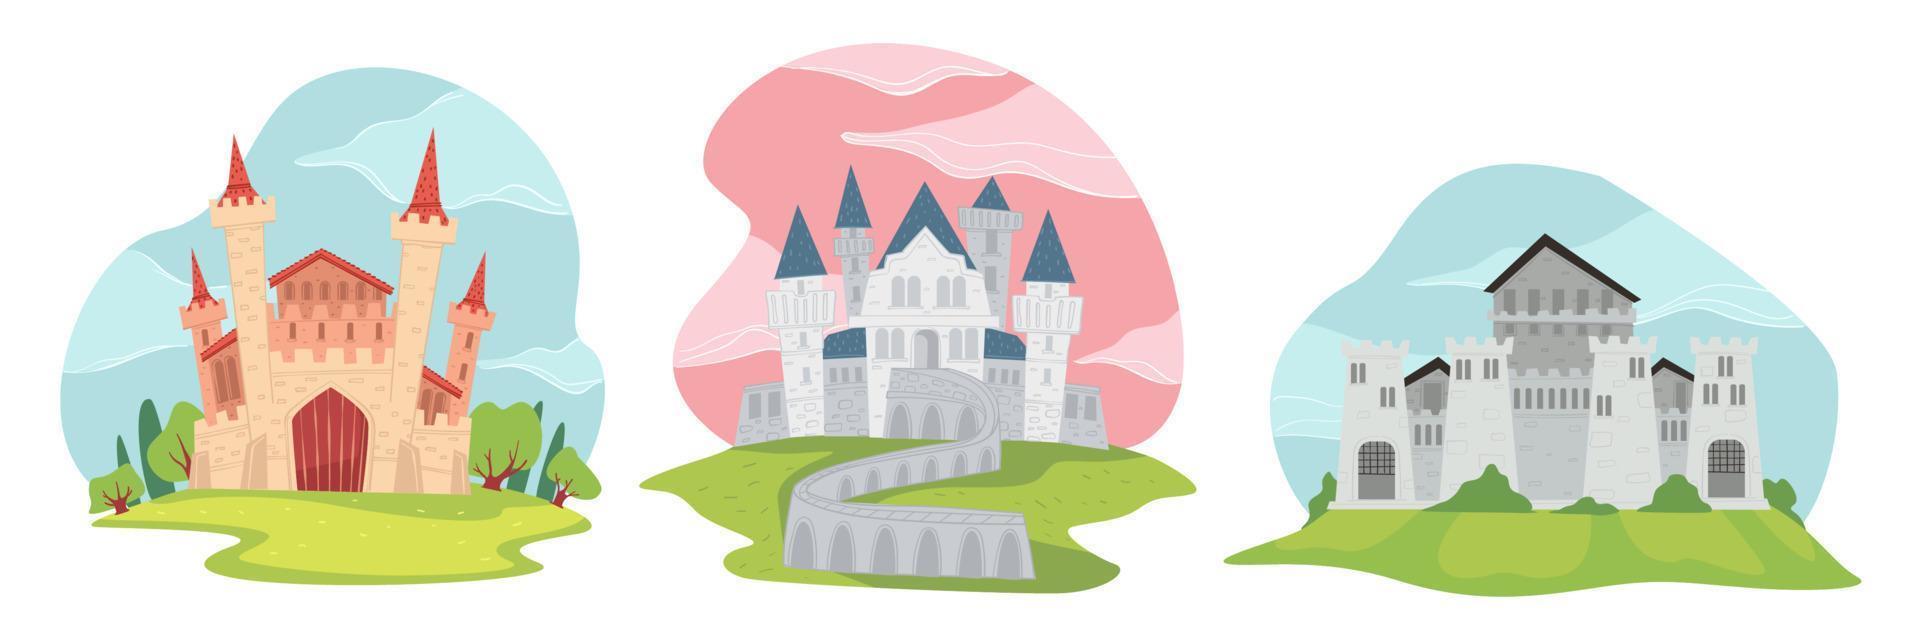 fantasie kasteel met middeleeuws architectuur buitenkant vector